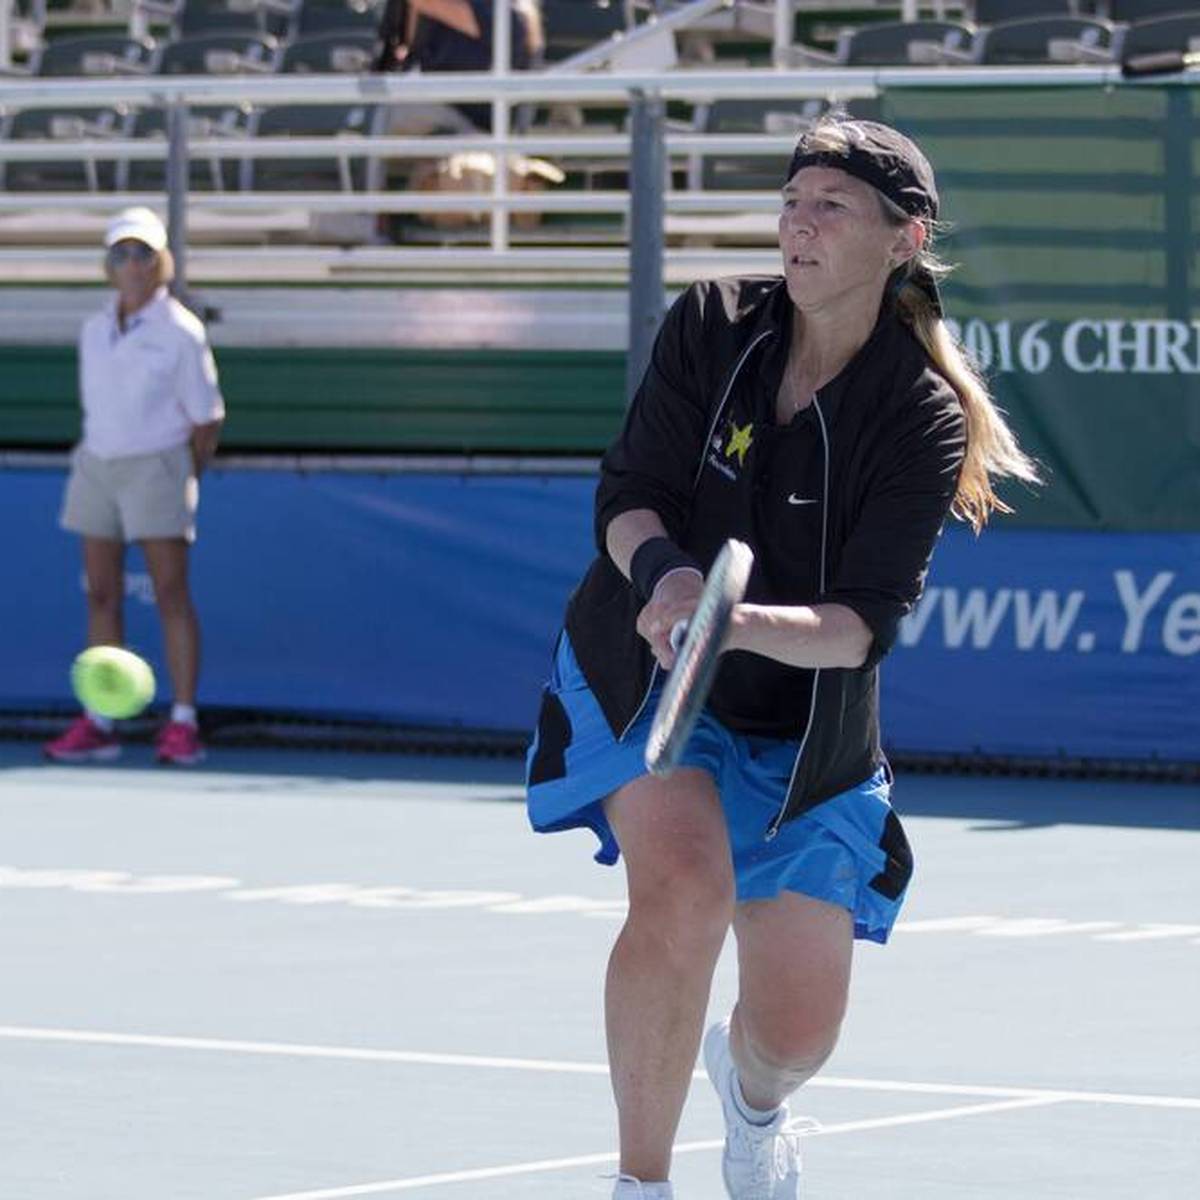 Andrea Jaeger war einst ein Top-Talent im Tennis. Nun hat sie schwere Anschuldigungen gegen die WTA und ihre Konkurrentinnen erhoben.